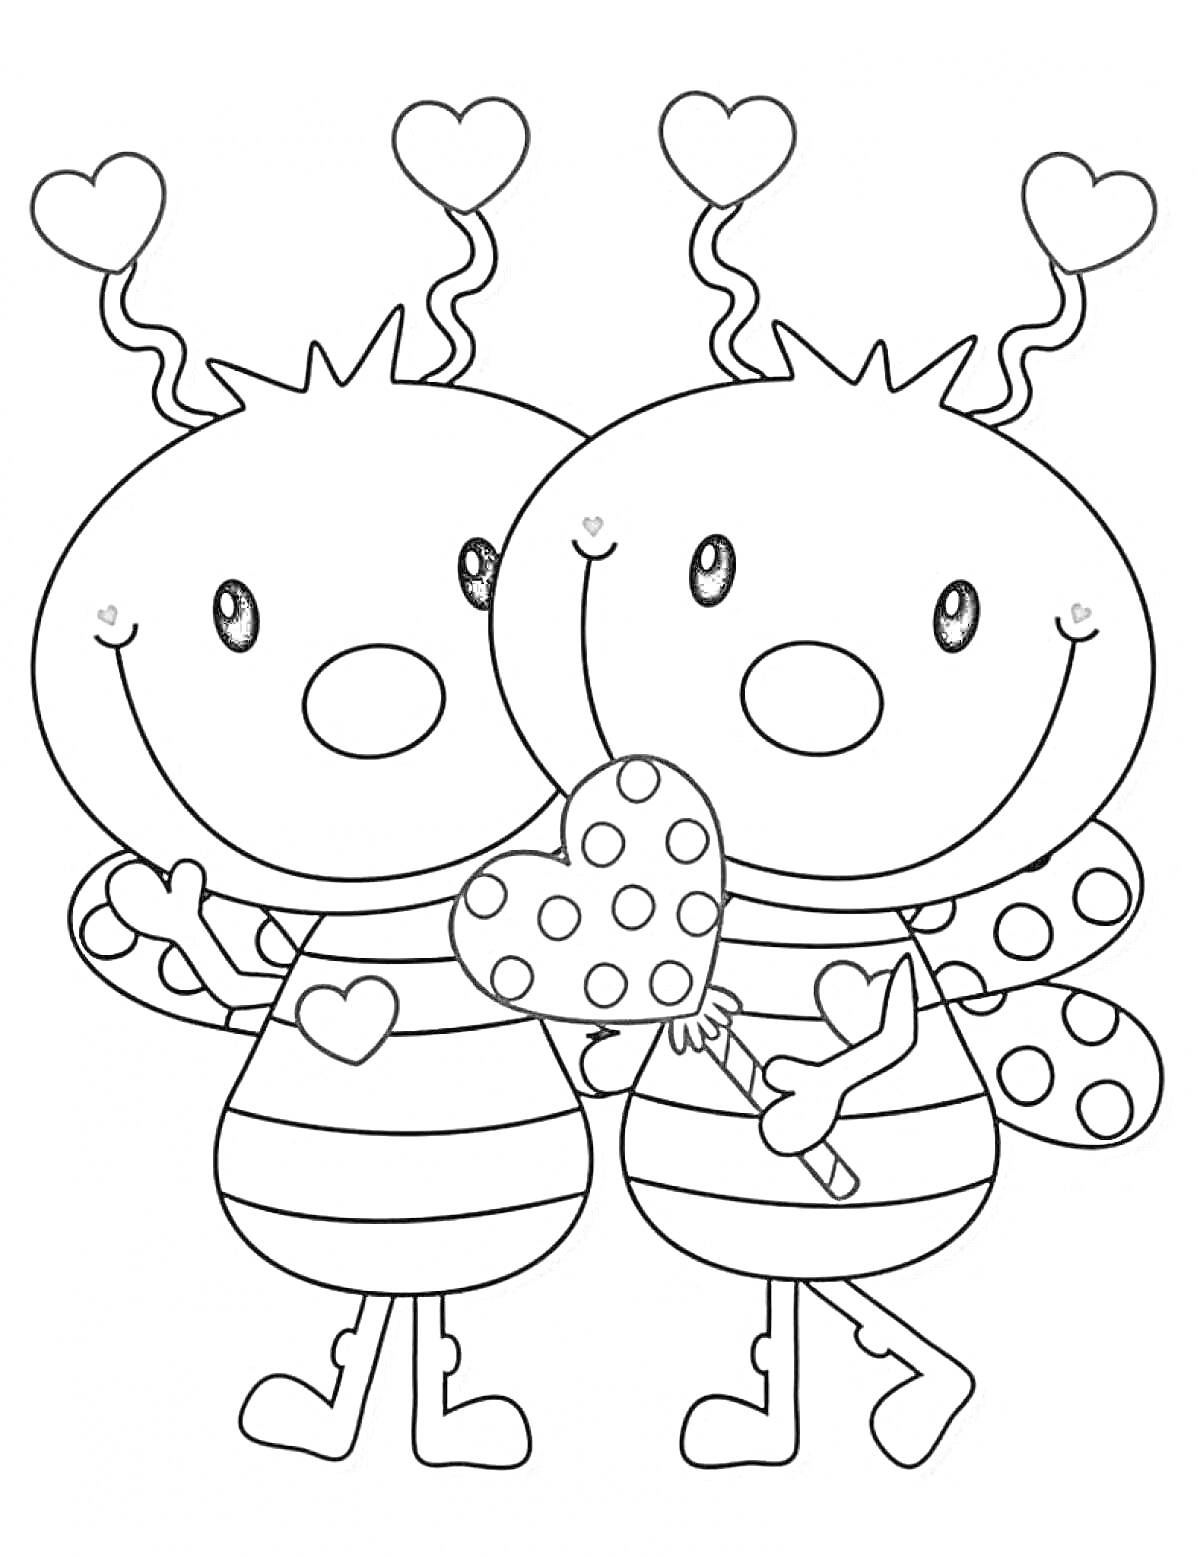 Раскраска Две букашки с сердечками, держащие сердечко в руках